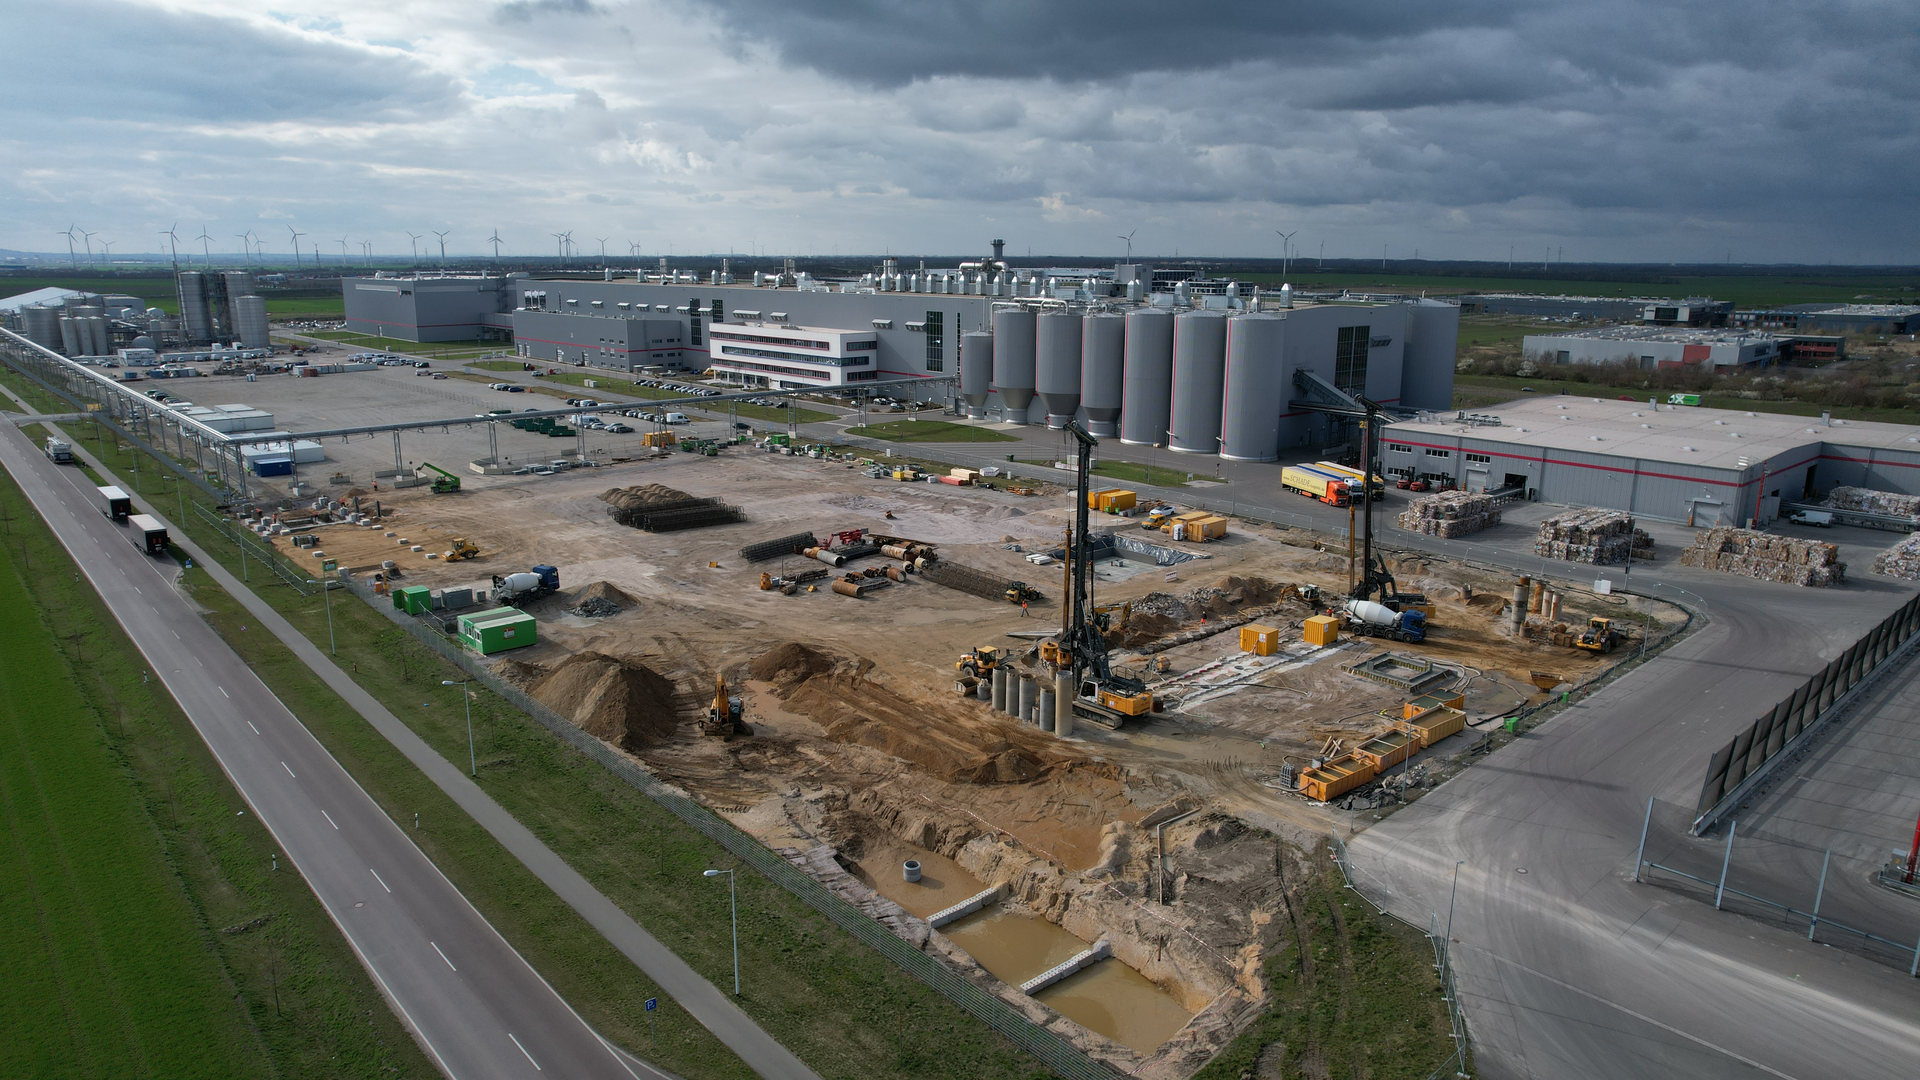 Przyjazna dla środowiska energia dla lokalizacji Progroup w Sandersdorf-Brehnie: Tutaj powstaje nowa elektrownia waste to energy.